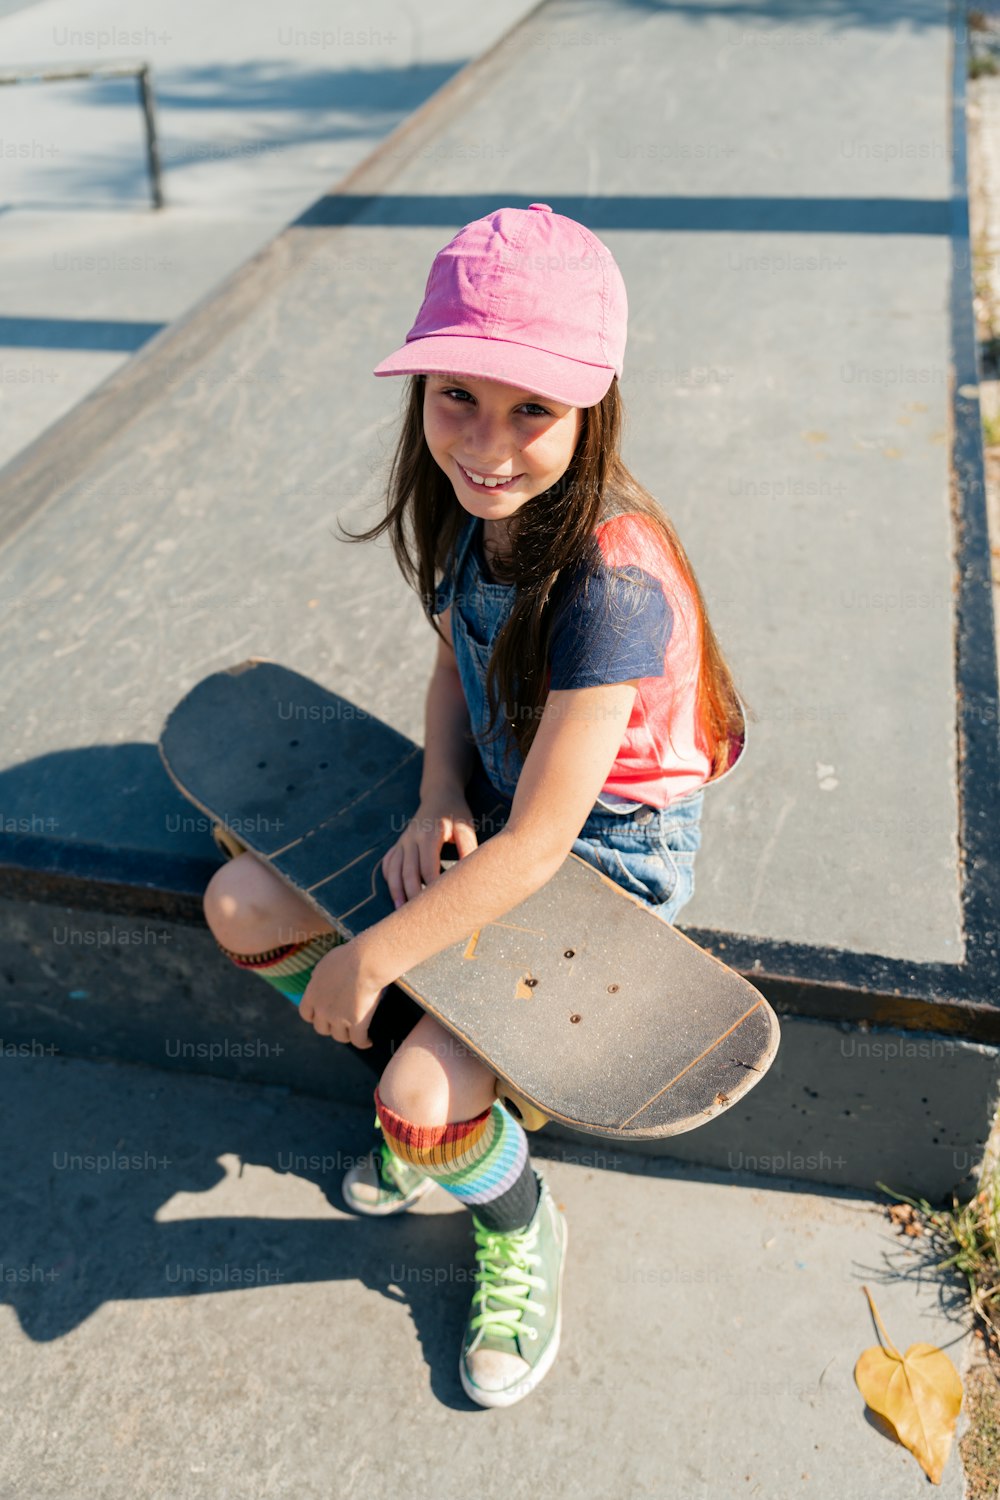 スケートボードを持って地面に座る少女